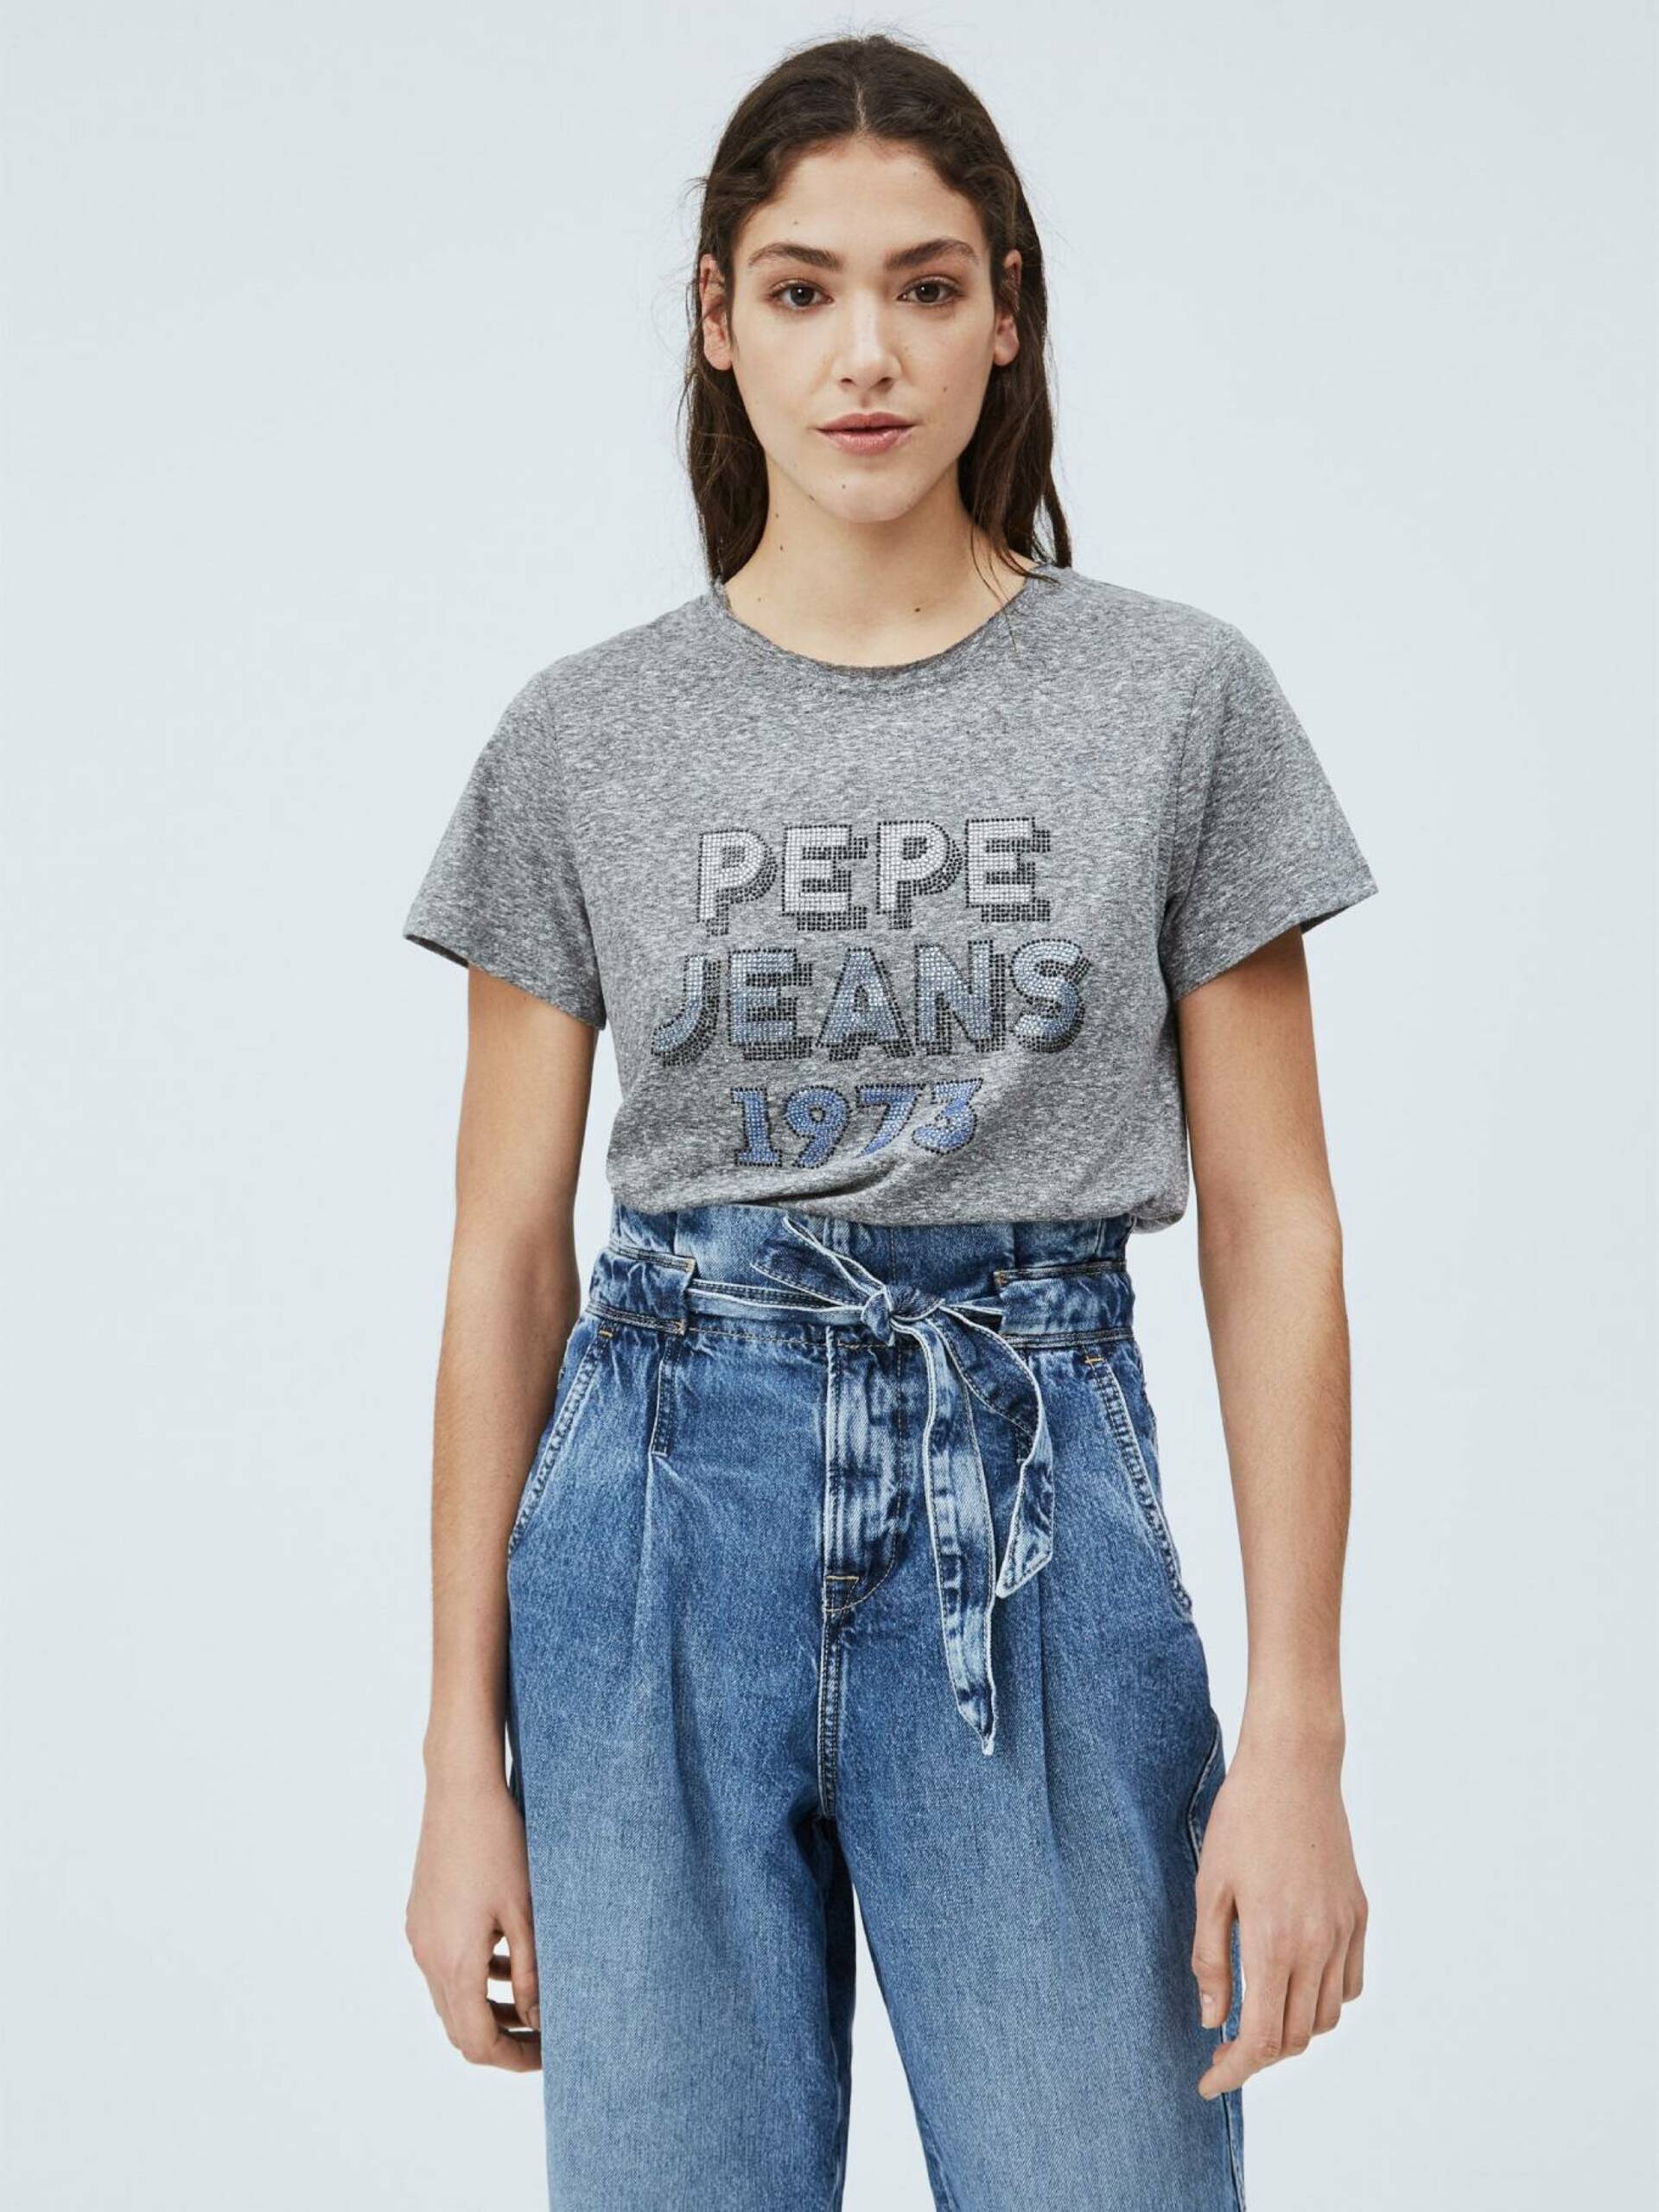 Pepe Jeans dámské šedé tričko Bibiana